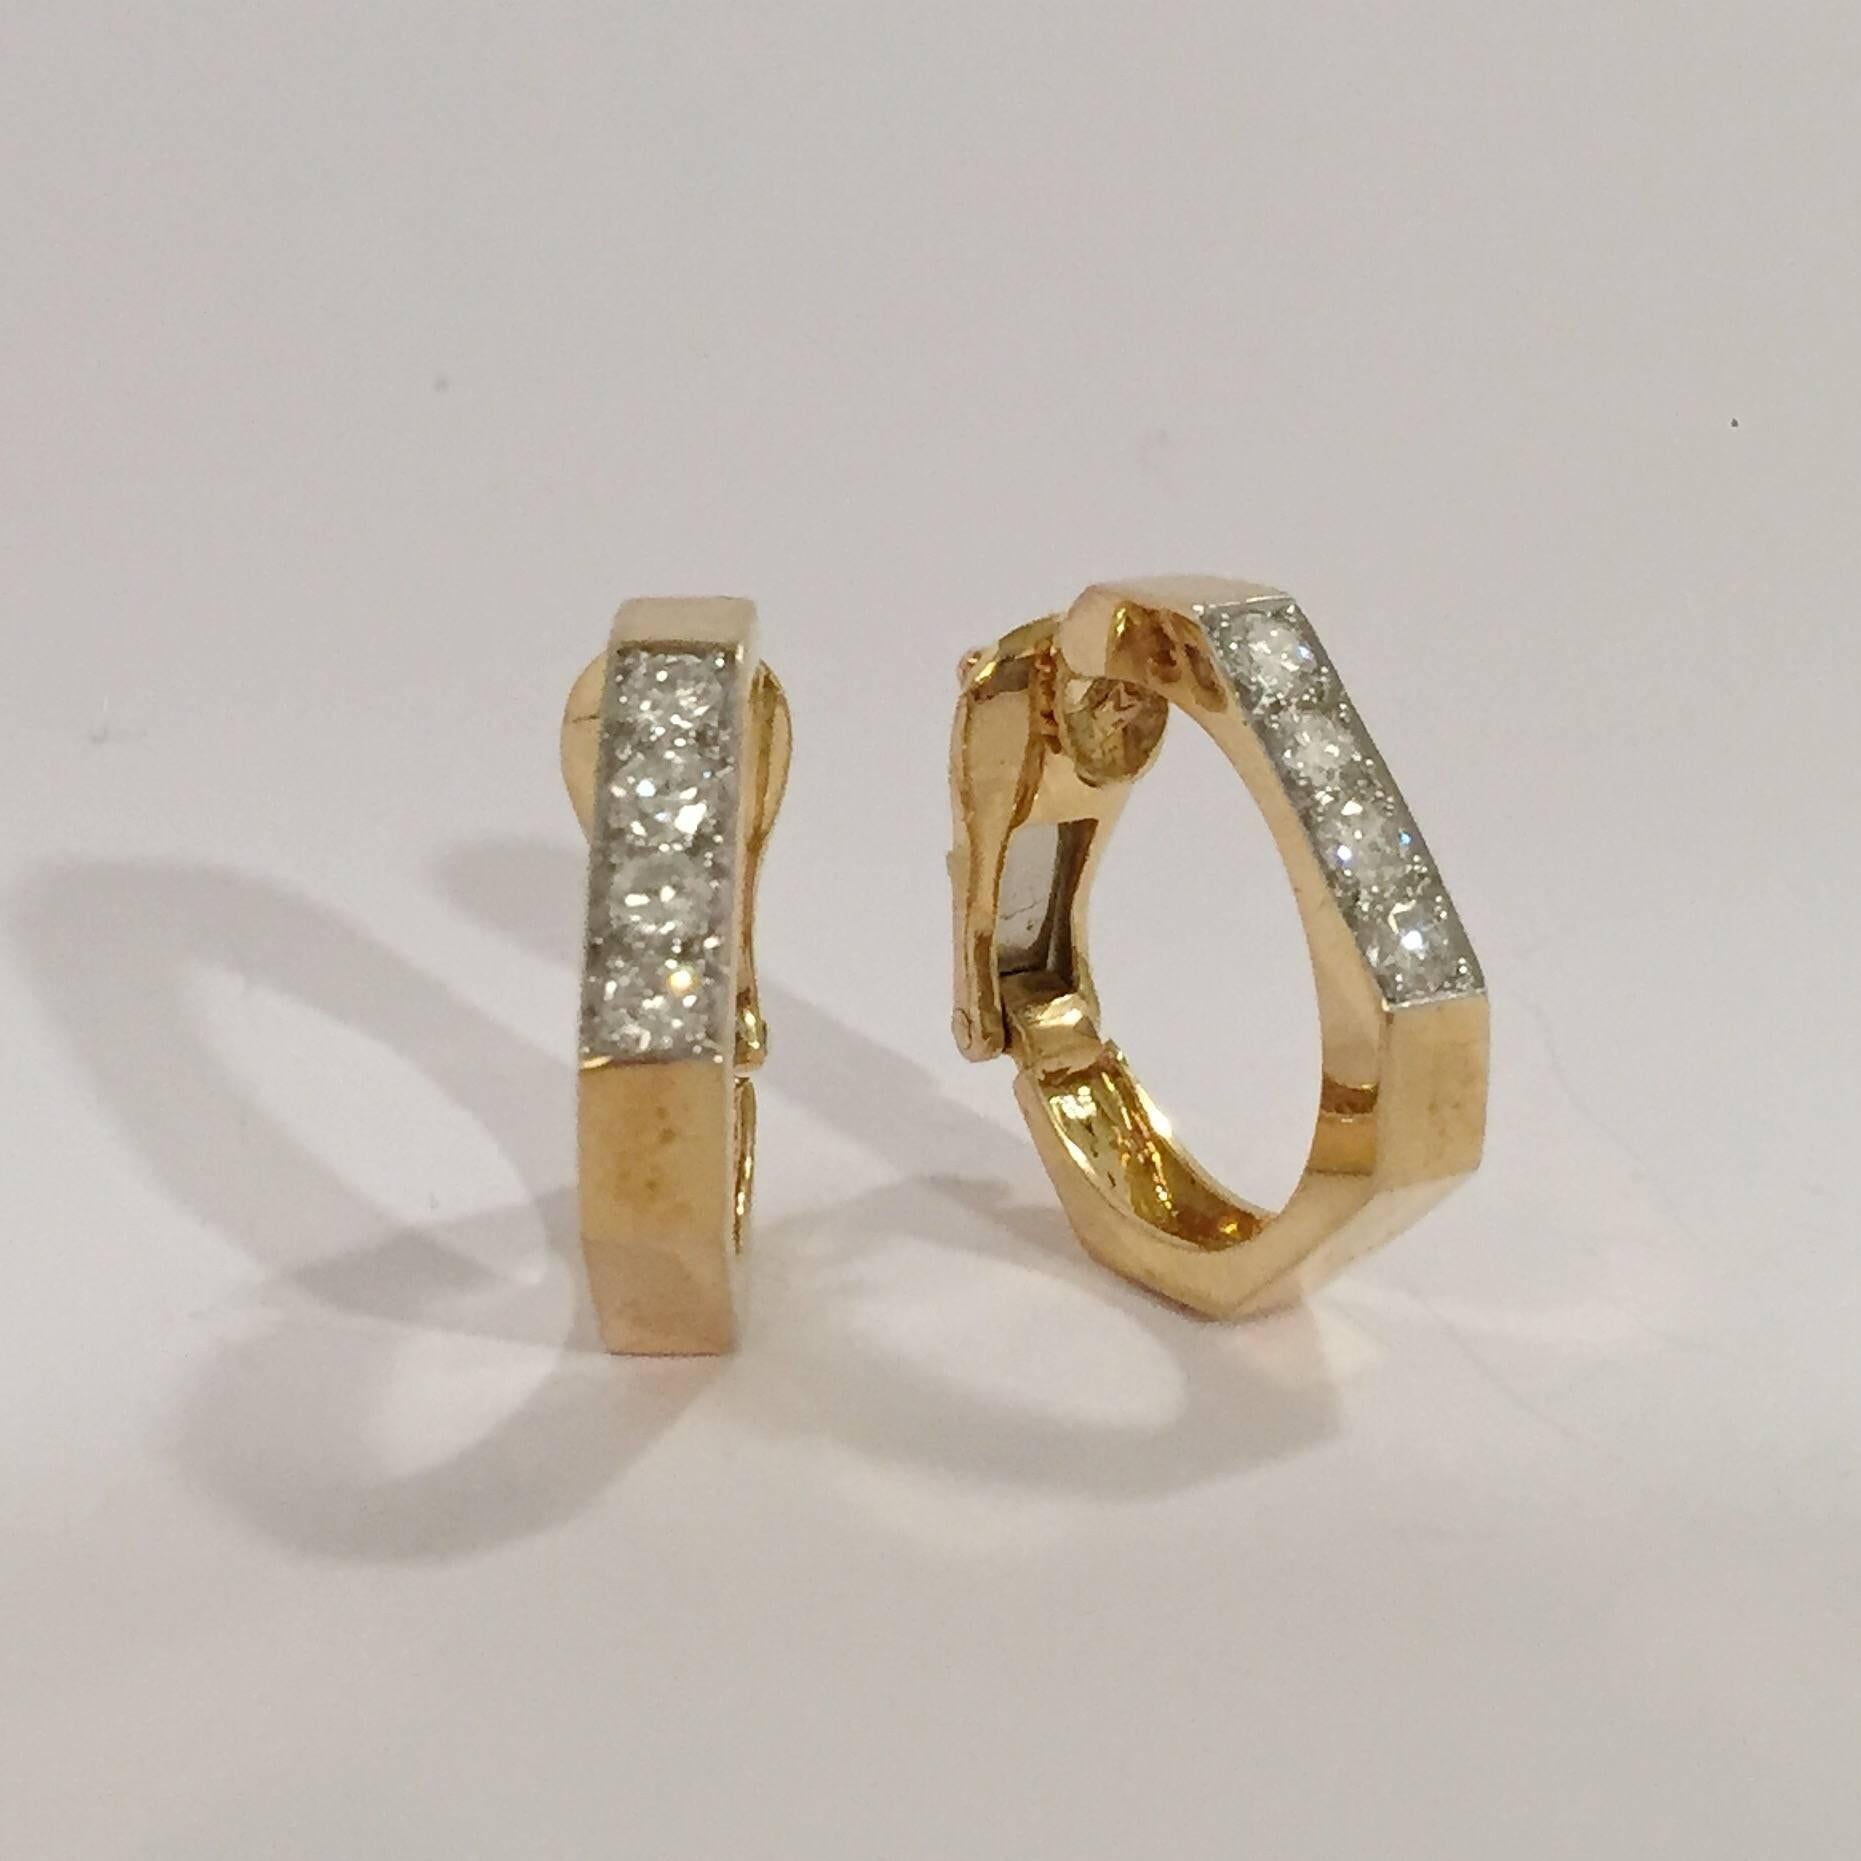 boucle d'oreille clip en or jaune 18 carats, forme angulaire, avec diamants, David Webb.  Les anneaux contiennent 6 diamants ronds d'un poids d'environ 1,5 kg  1.00ct.

Les anneaux sont faits pour des boucles d'oreilles à clip mais peuvent être